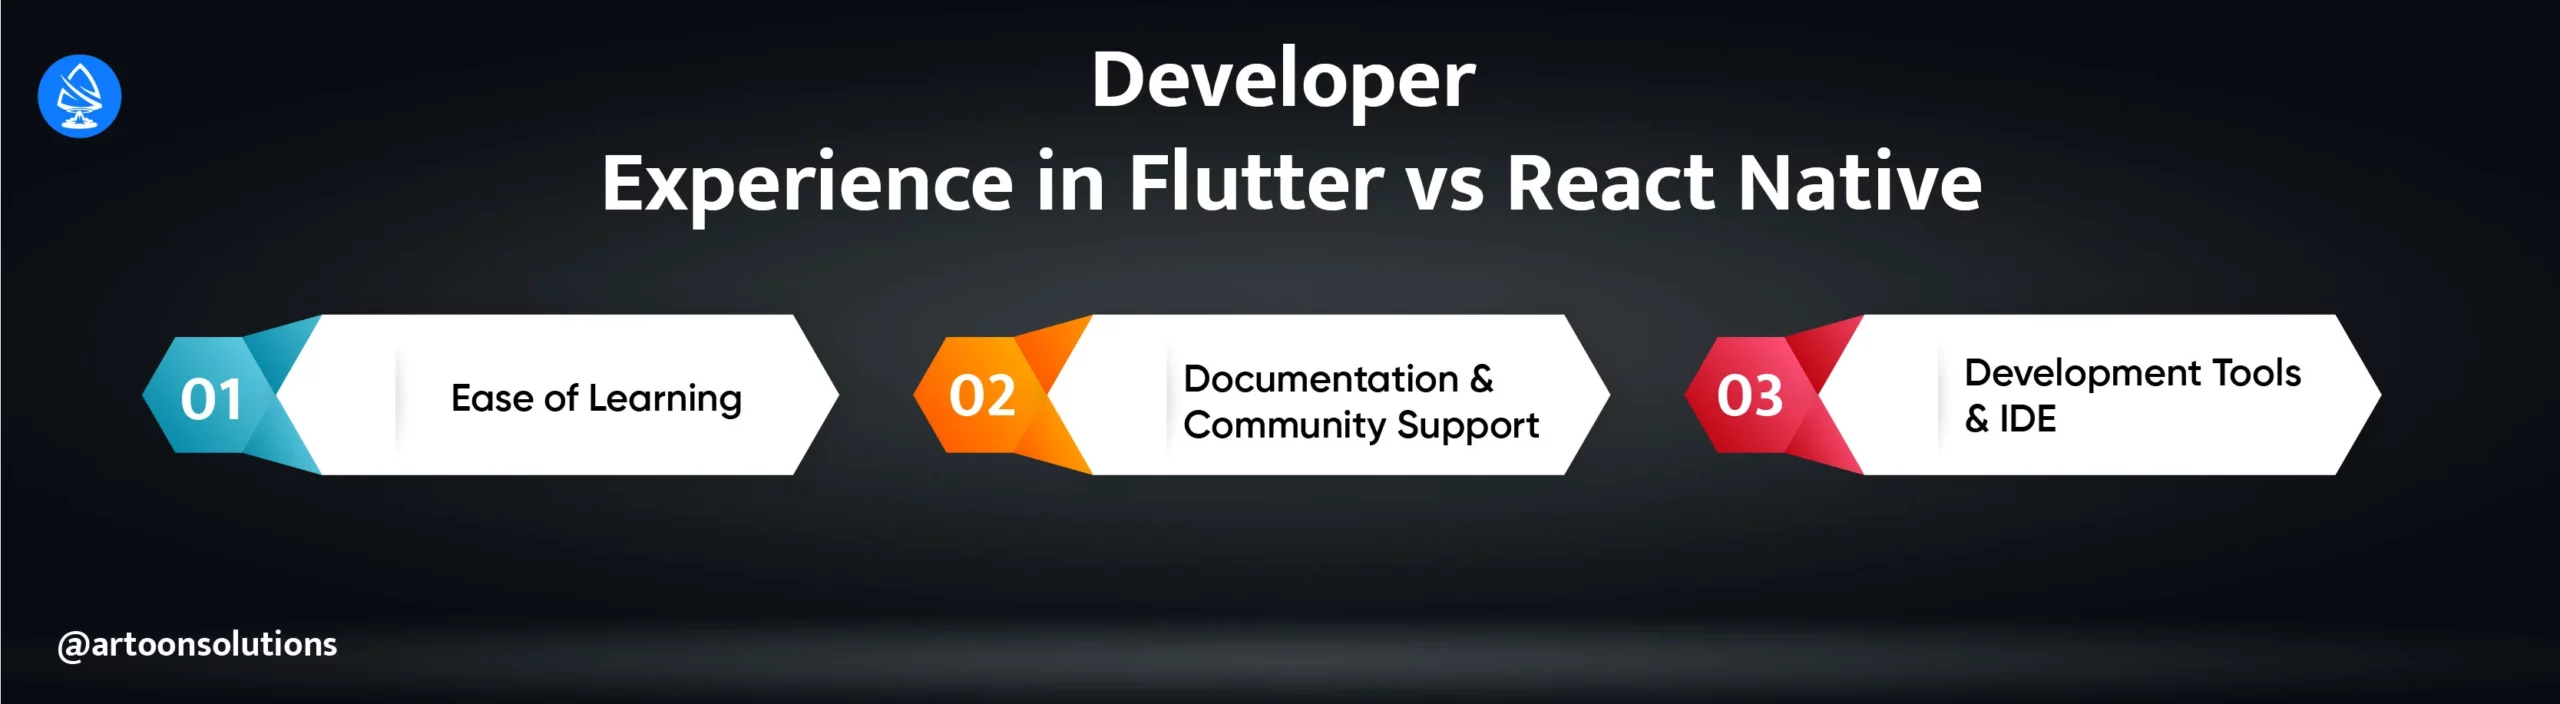 Developer Experience in Flutter vs React Native